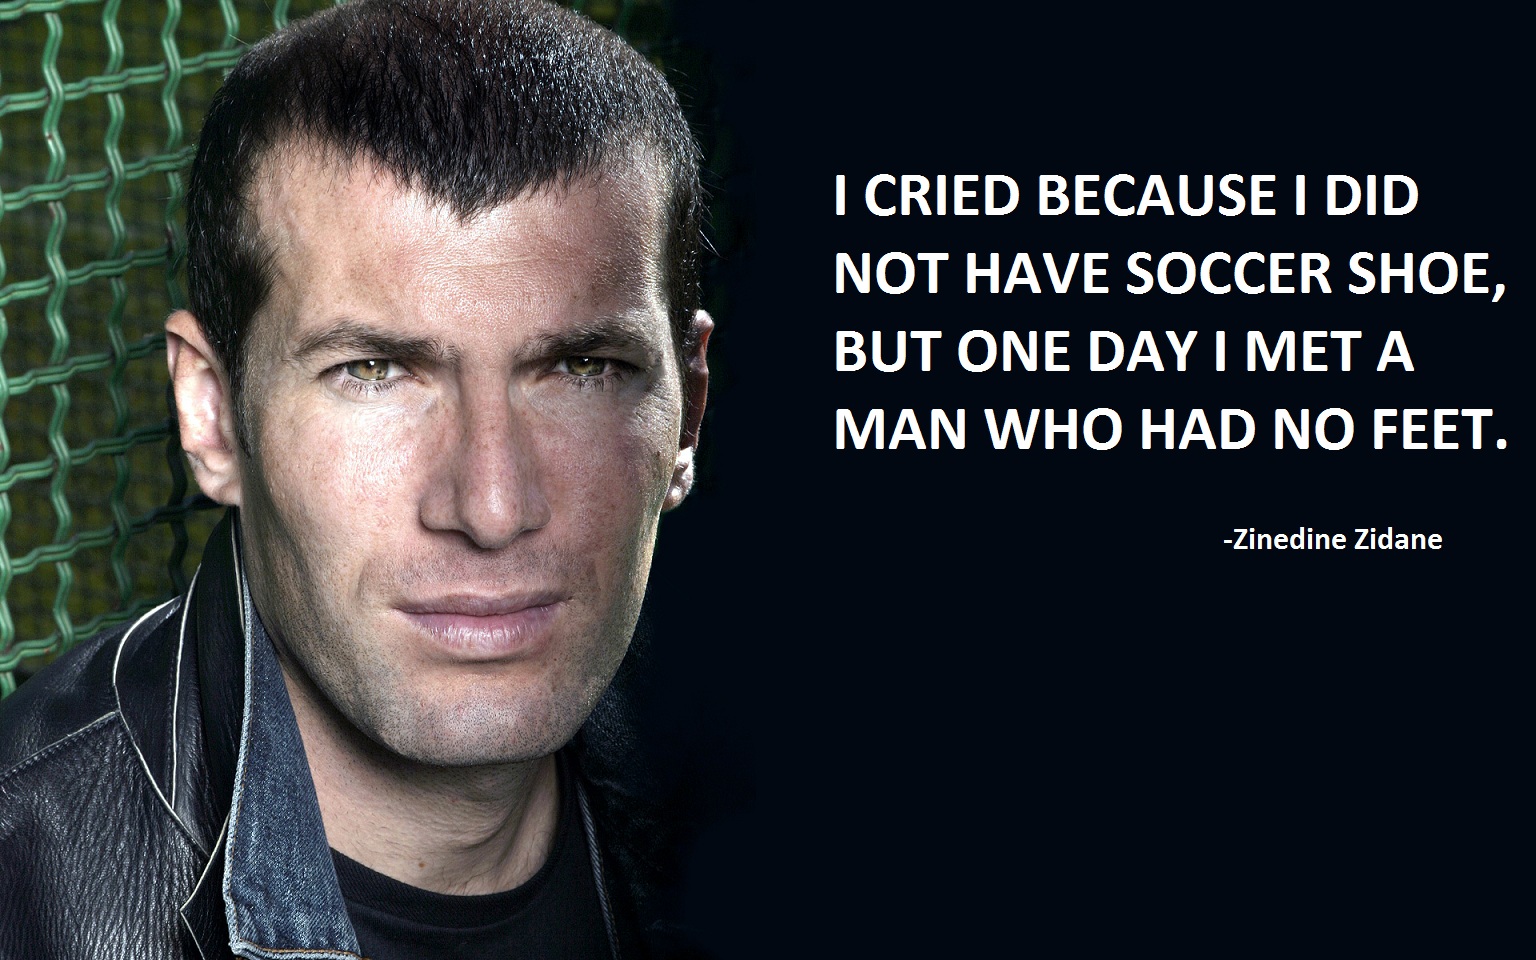 Zinedine Zidane's quote #4